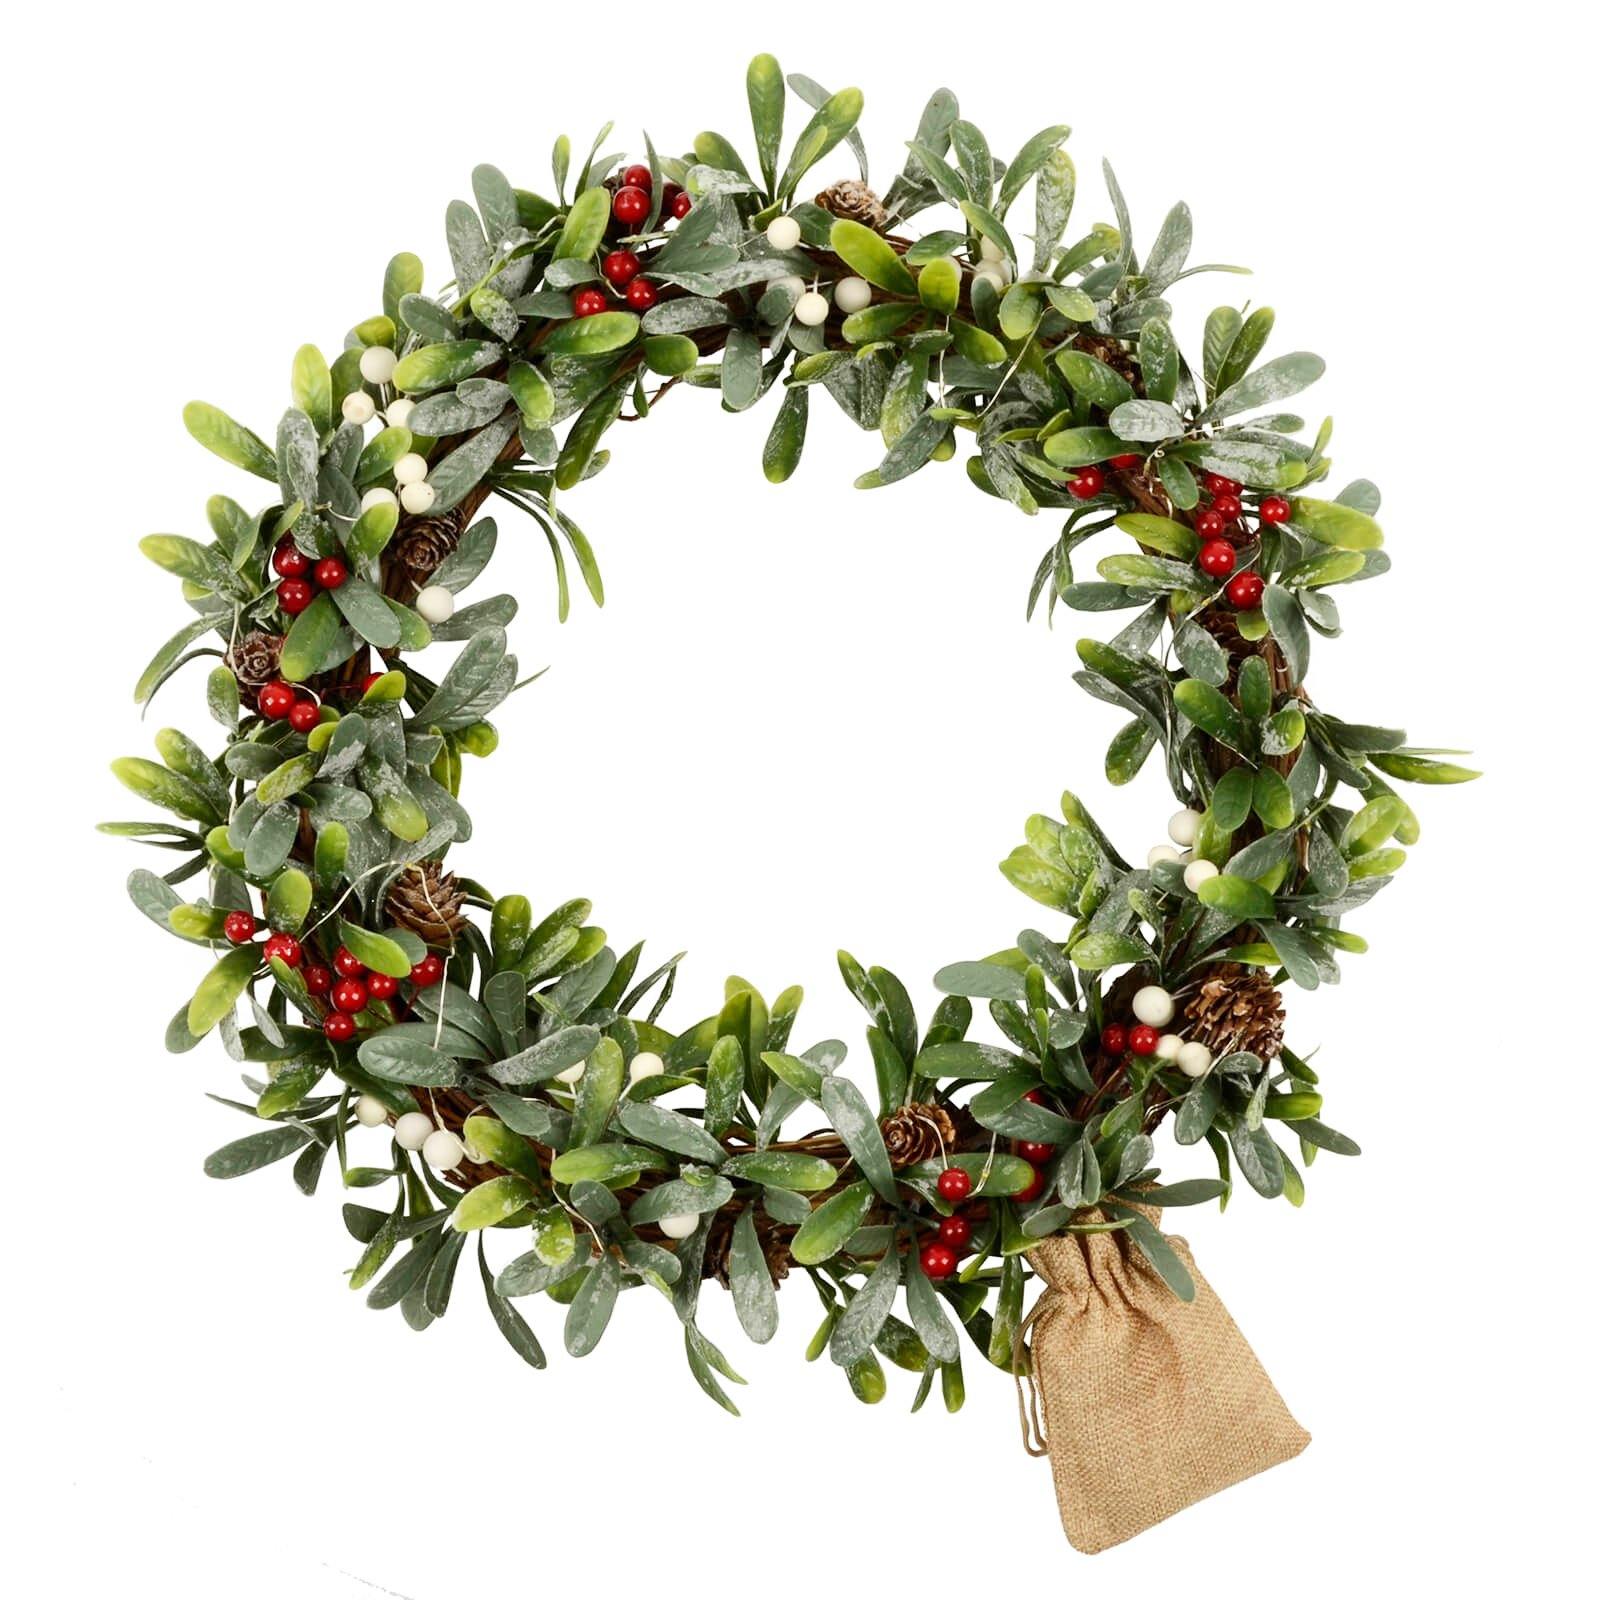 Mr Crimbo 16" Light Up Mistletoe Wreath Christmas Berries - MrCrimbo.co.uk -XS7141 - -